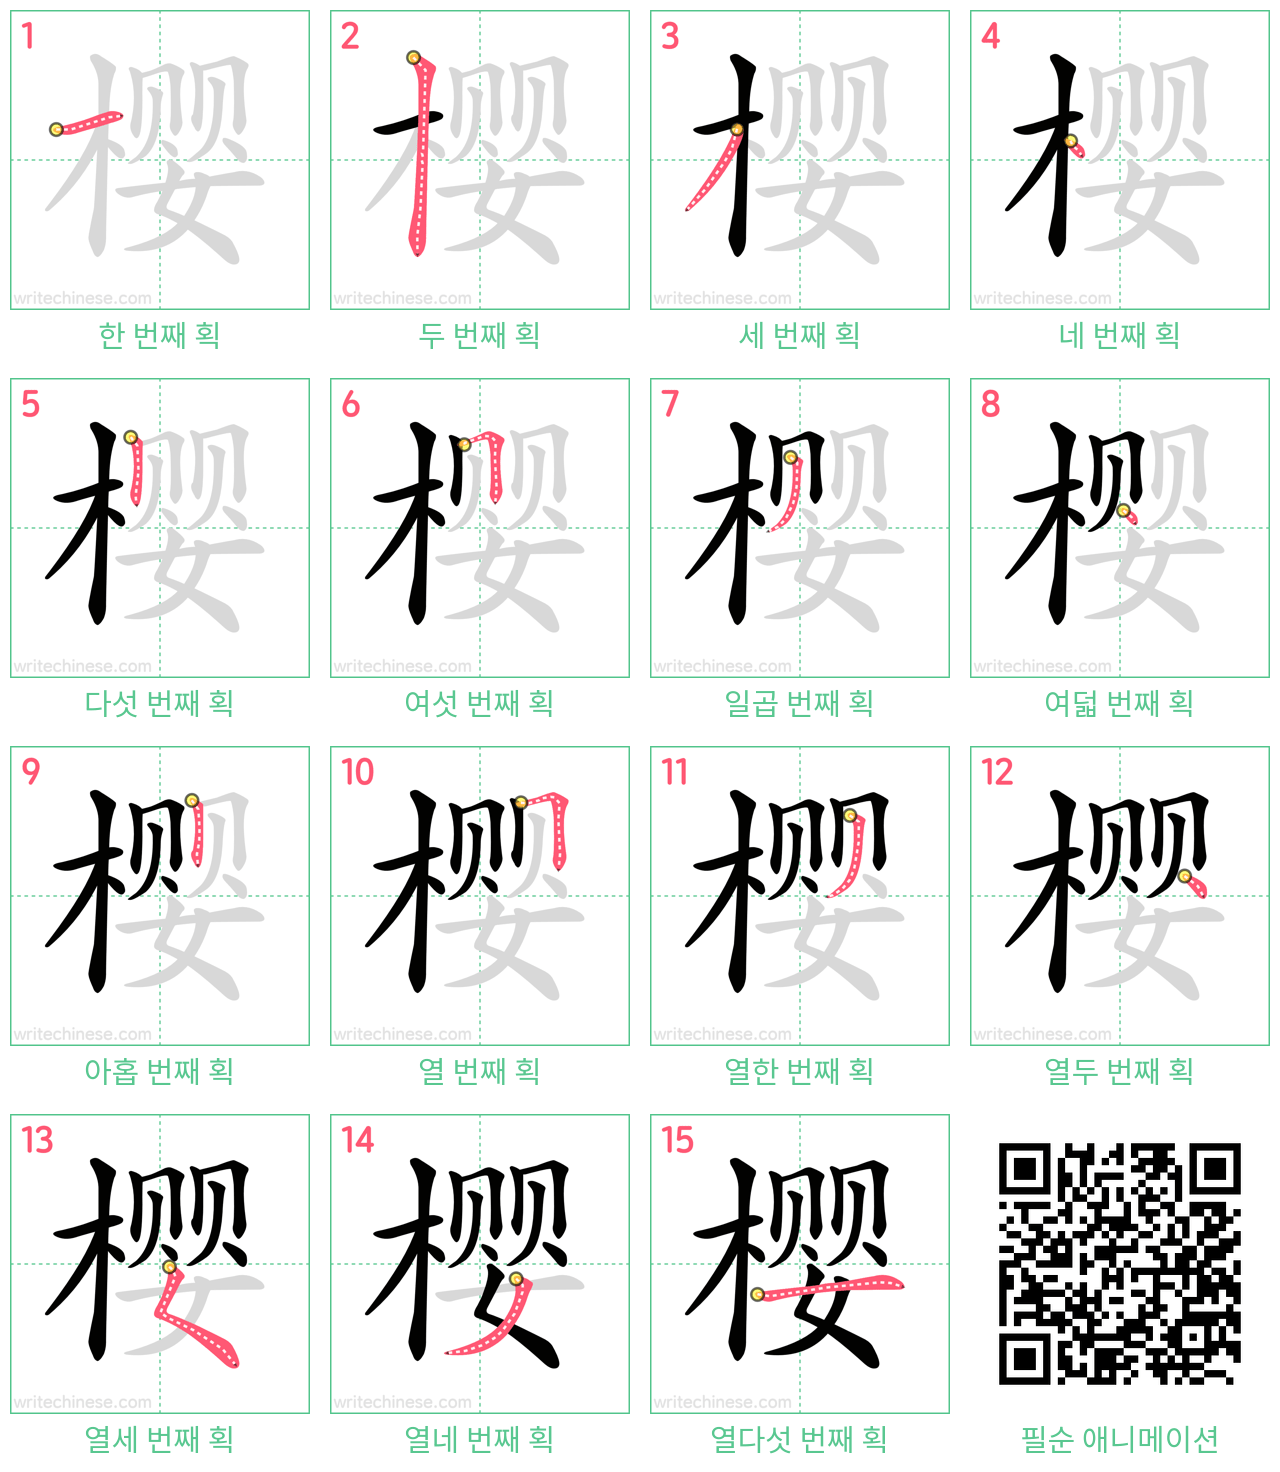 樱 step-by-step stroke order diagrams